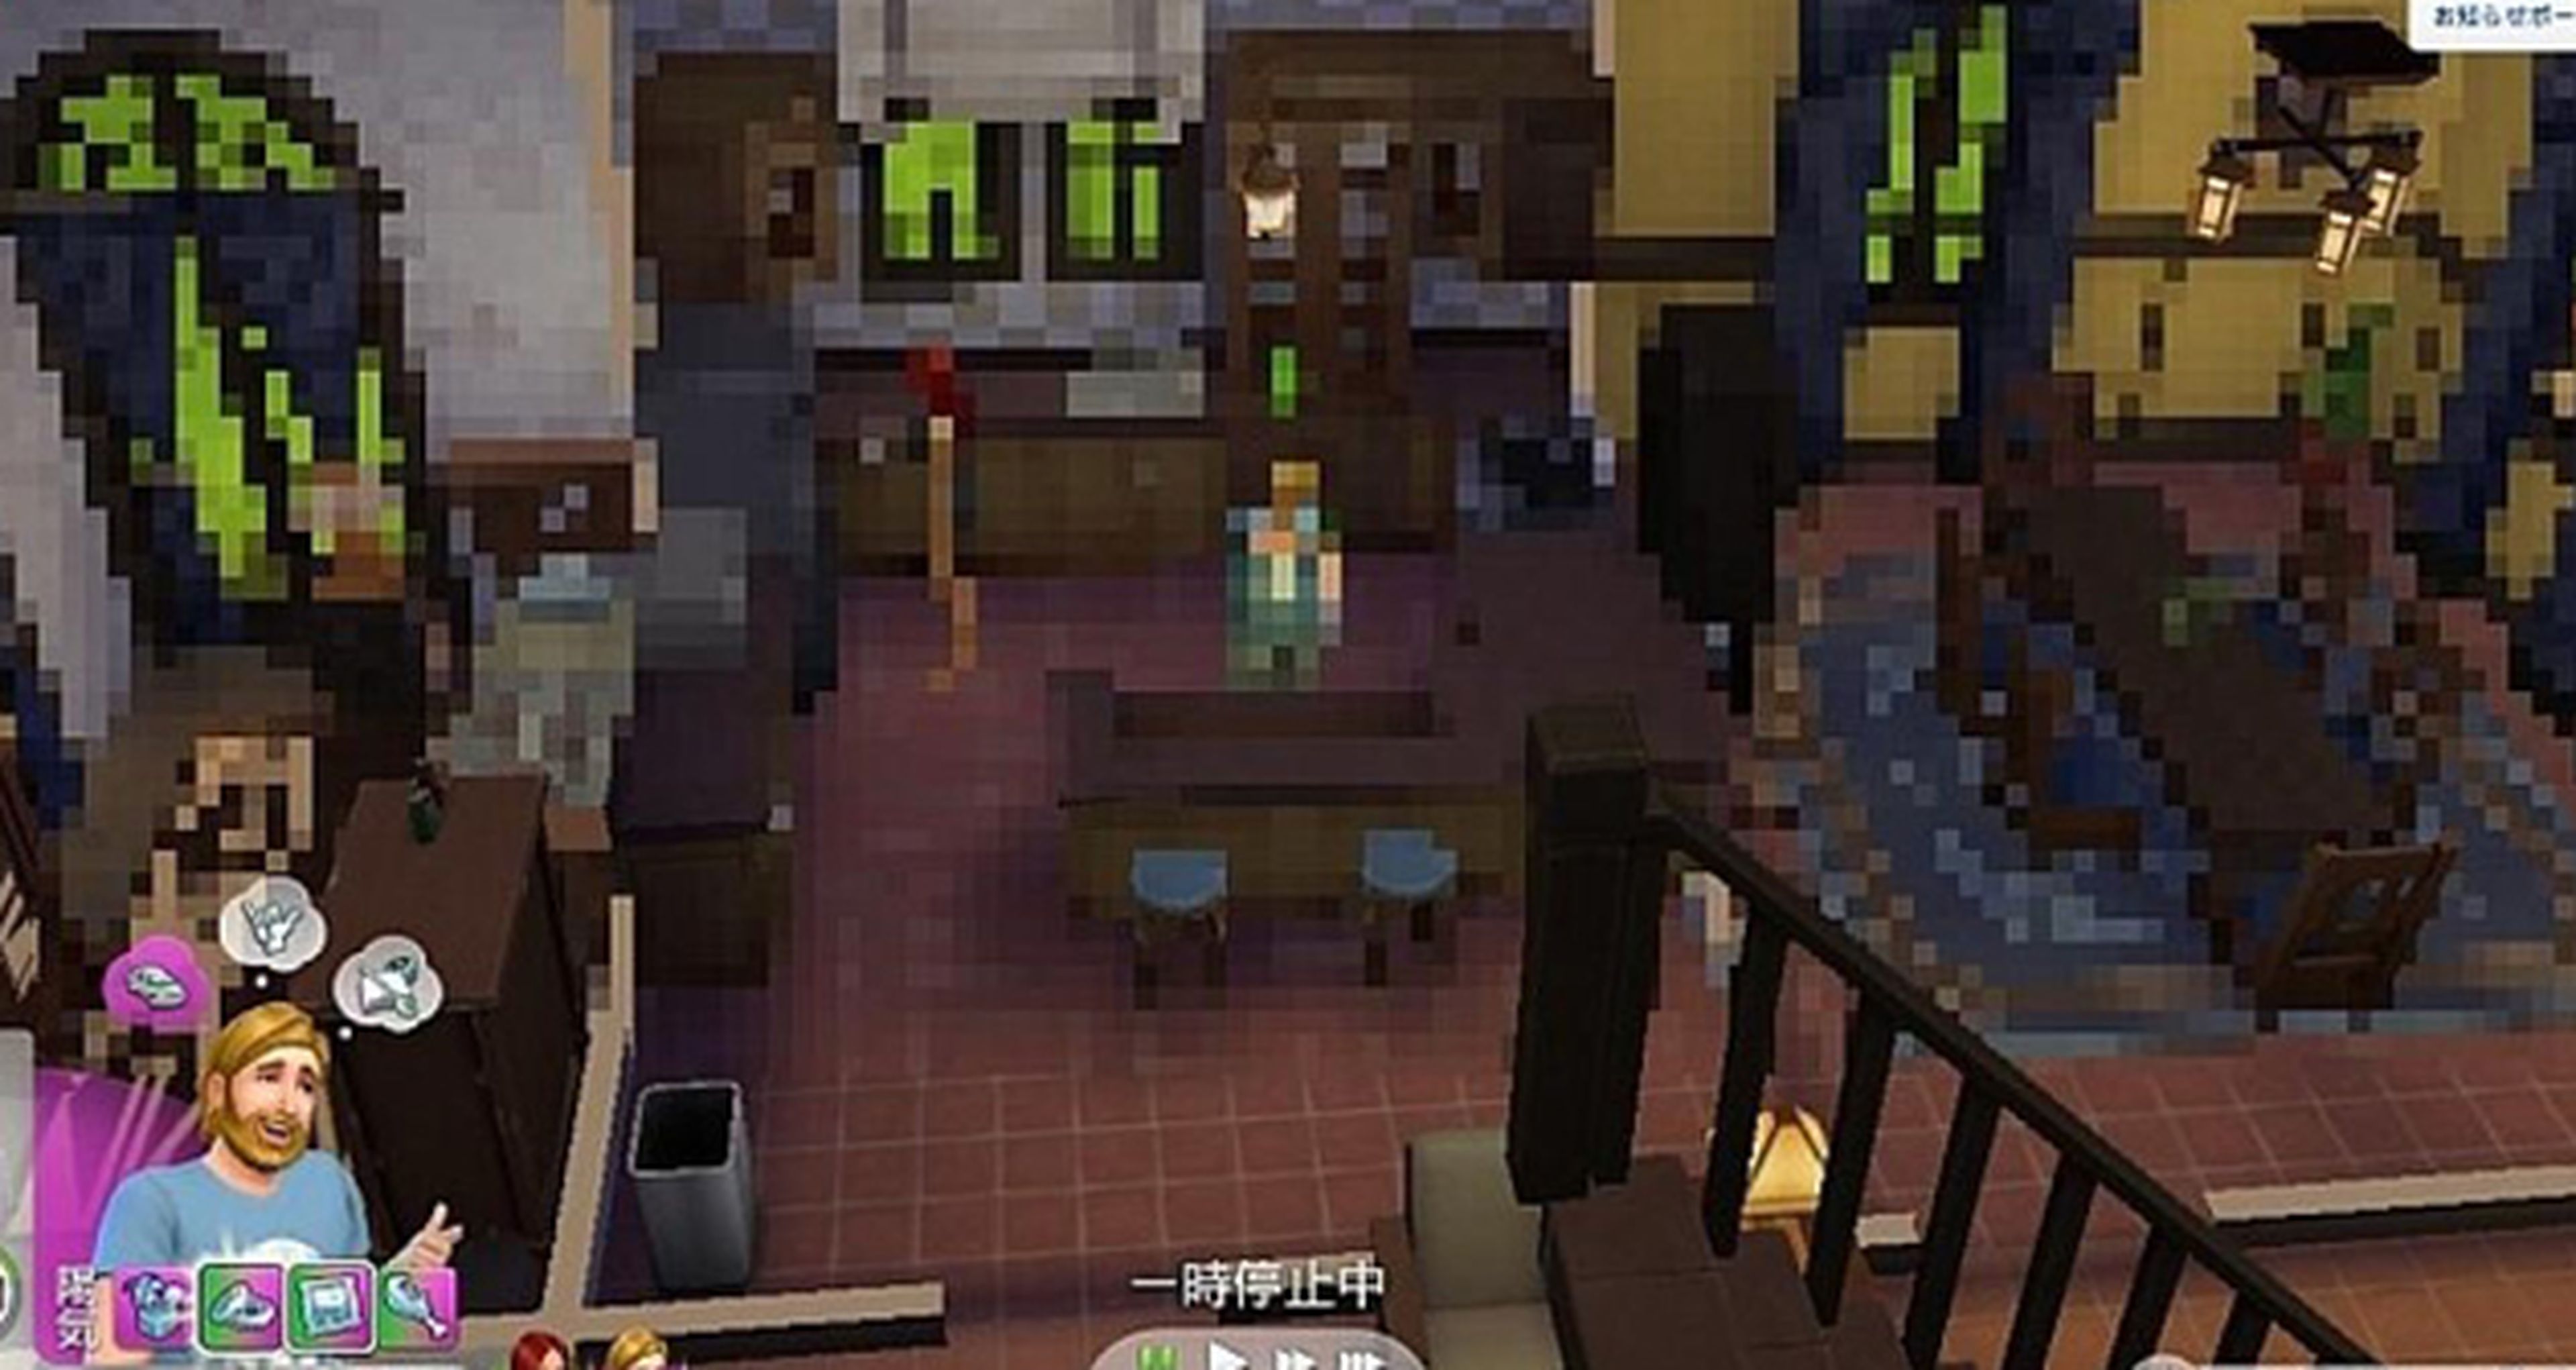 Los Sims 4 cuentan con un sistema antipiratería